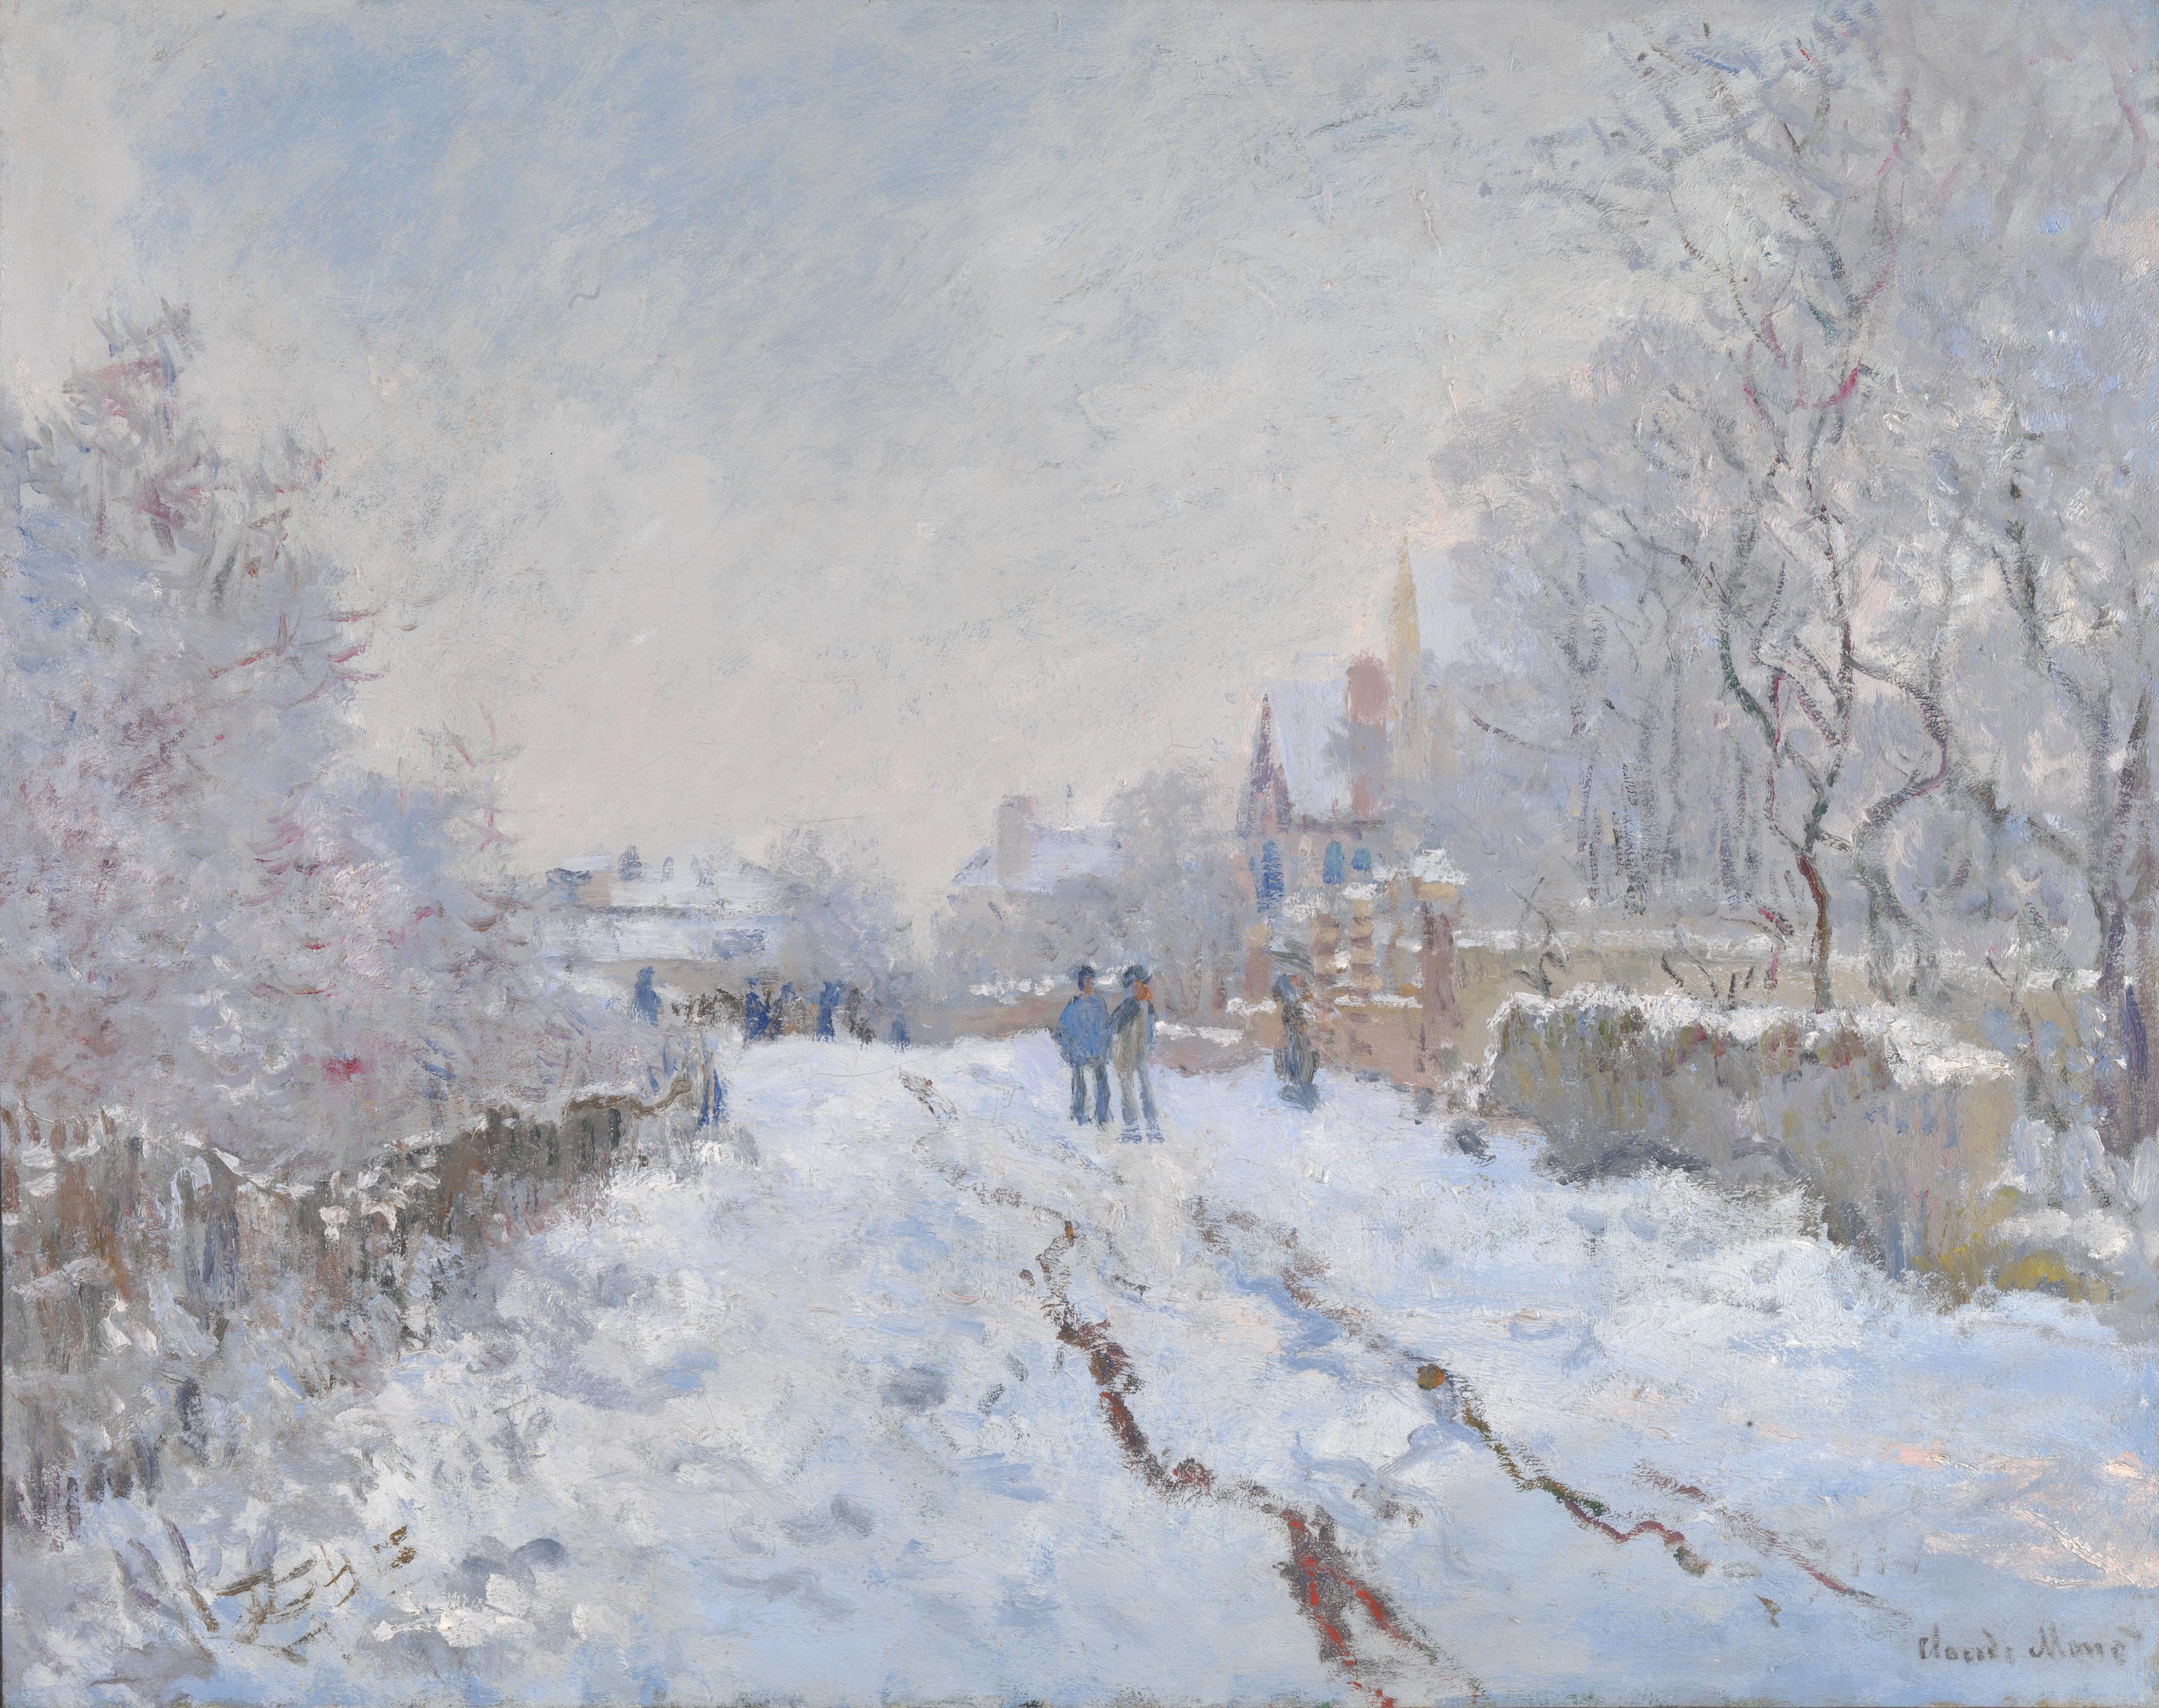 阿让特伊的雪景 by 克劳德· 莫奈 - 1875 - 71.1 x 91.4 厘米 